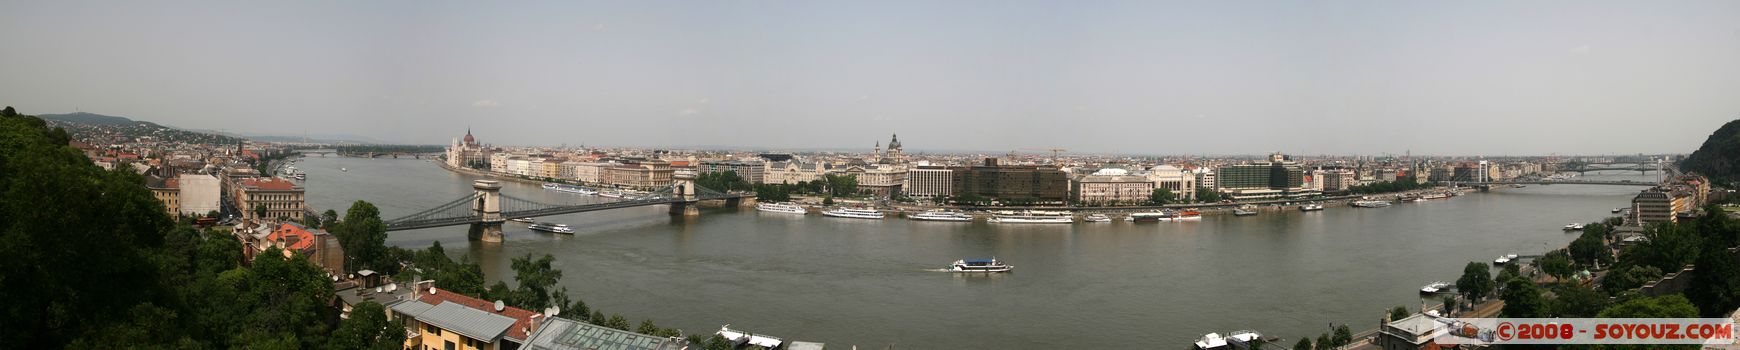 Budapest - Budavari Palota - panorama on Pest
Mots-clés: panorama